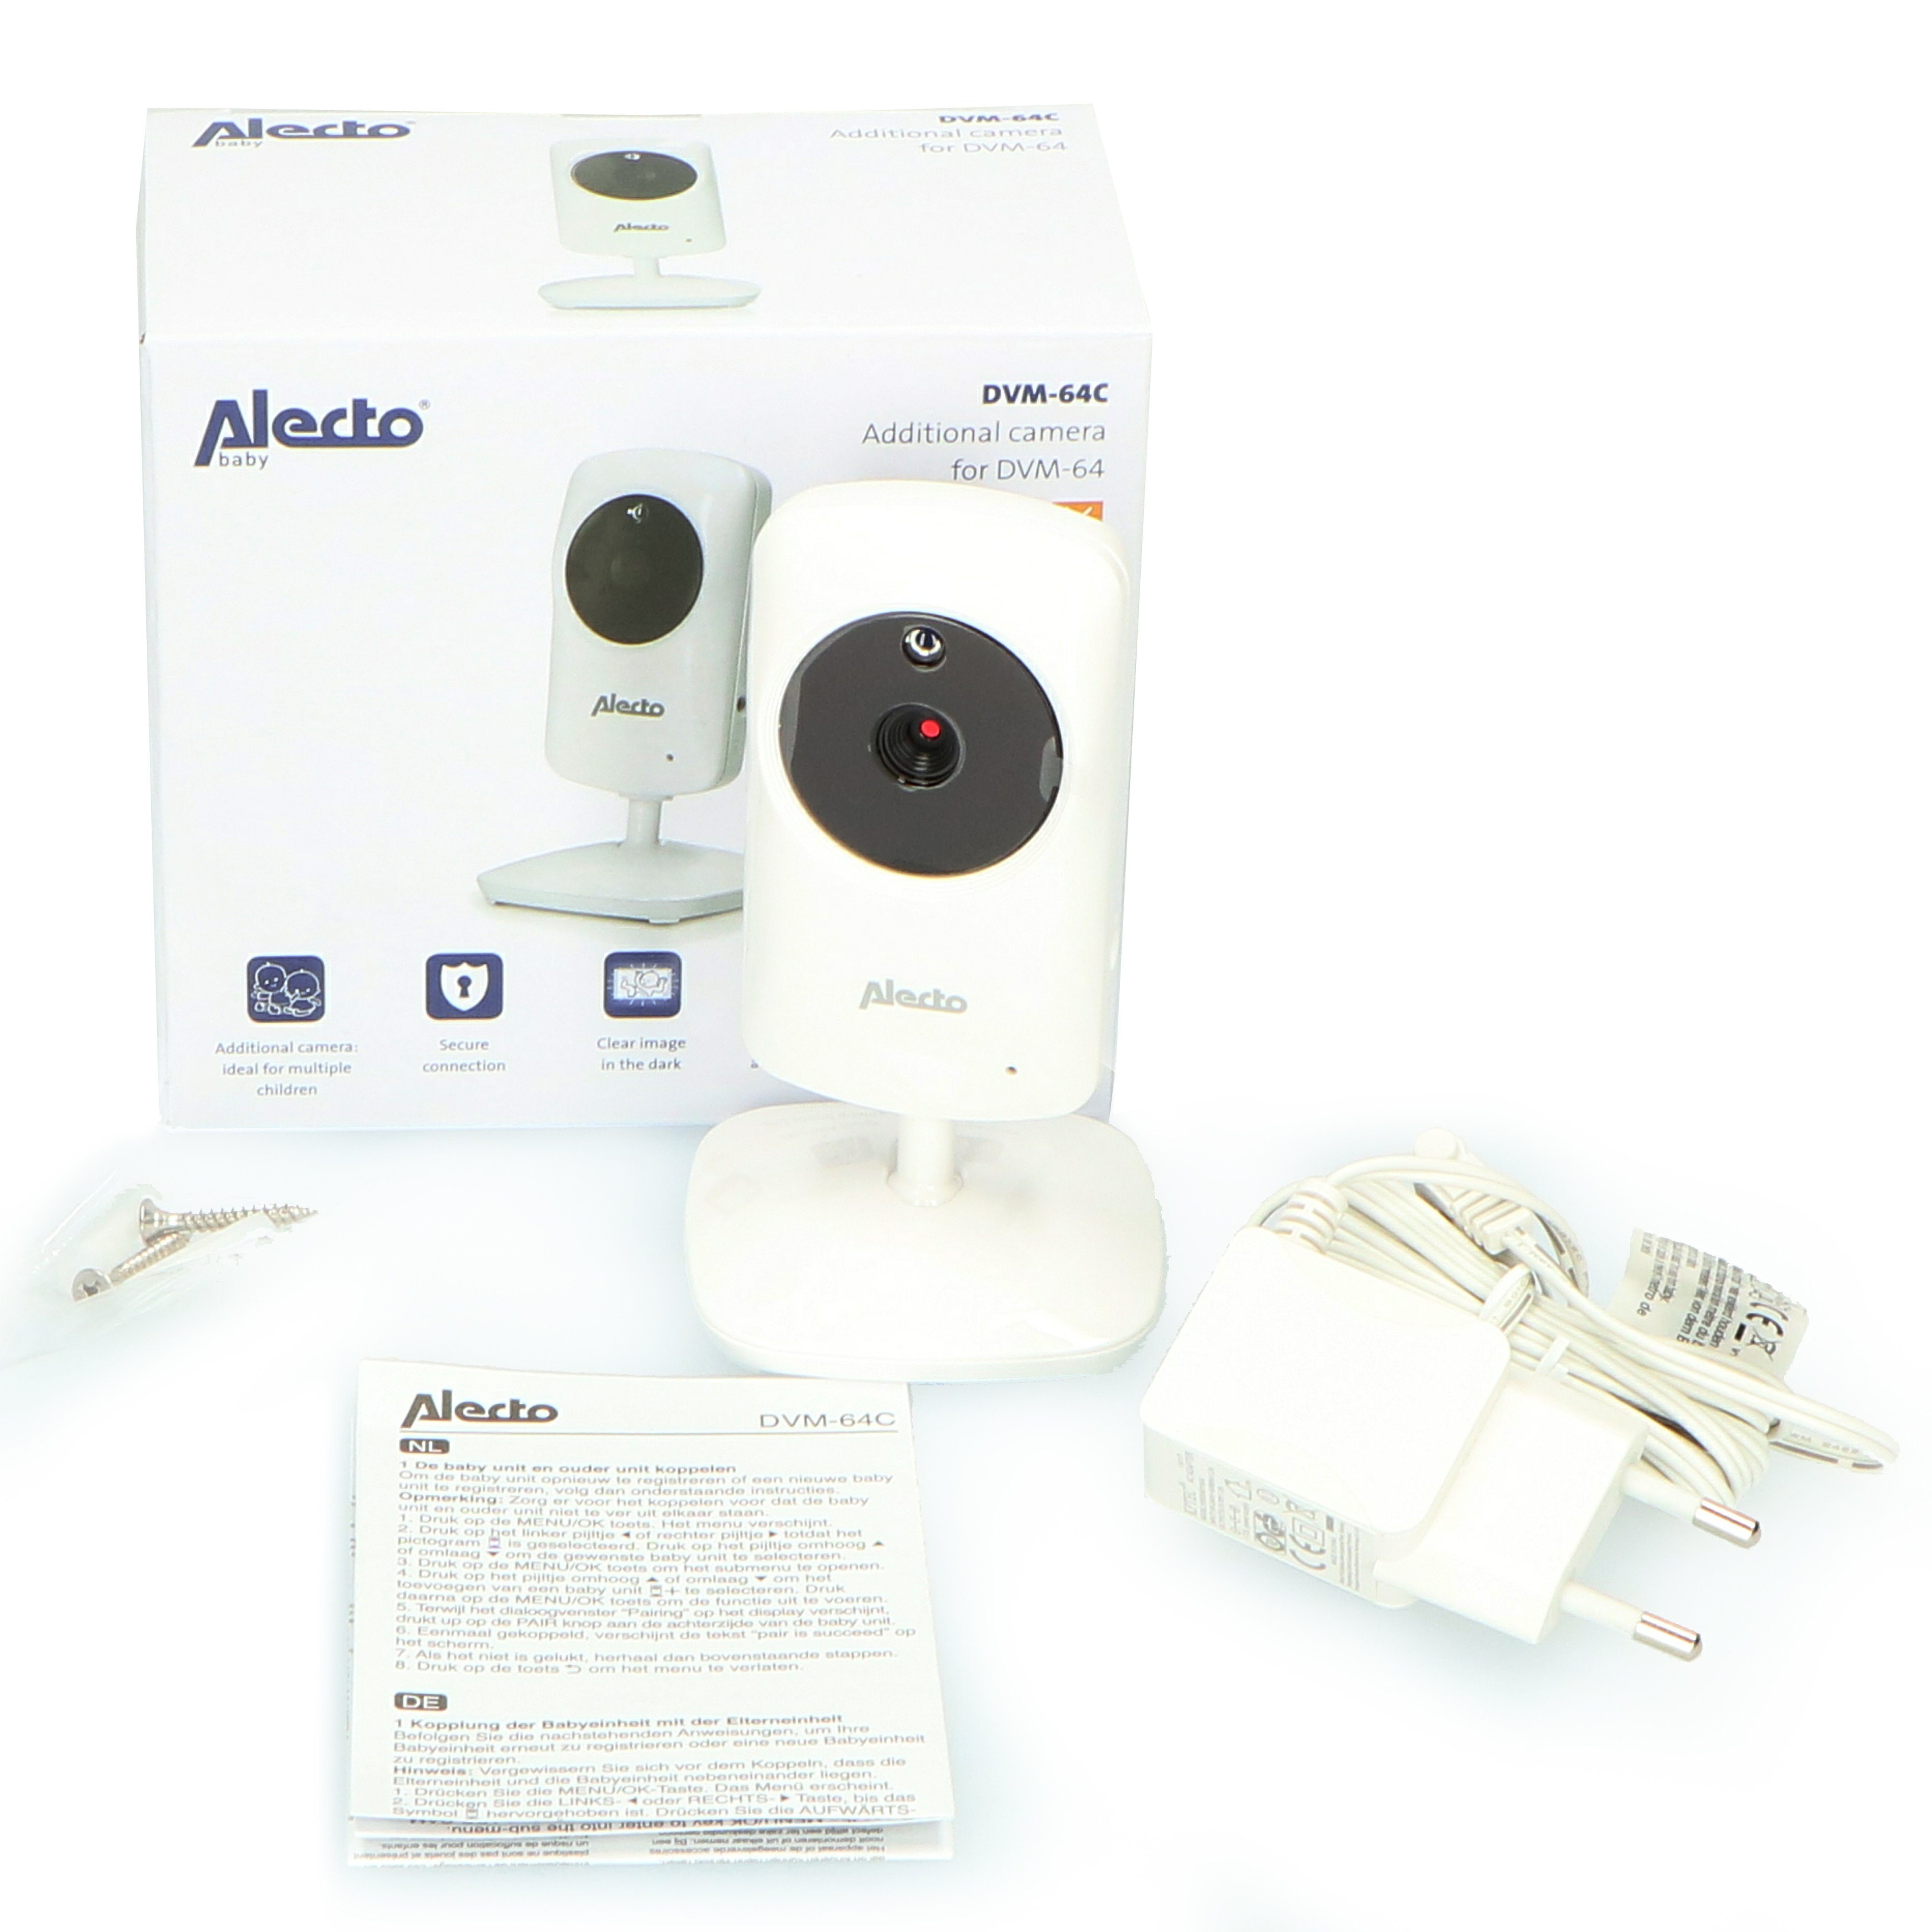 DVM-64C Video-Babyphone Alecto